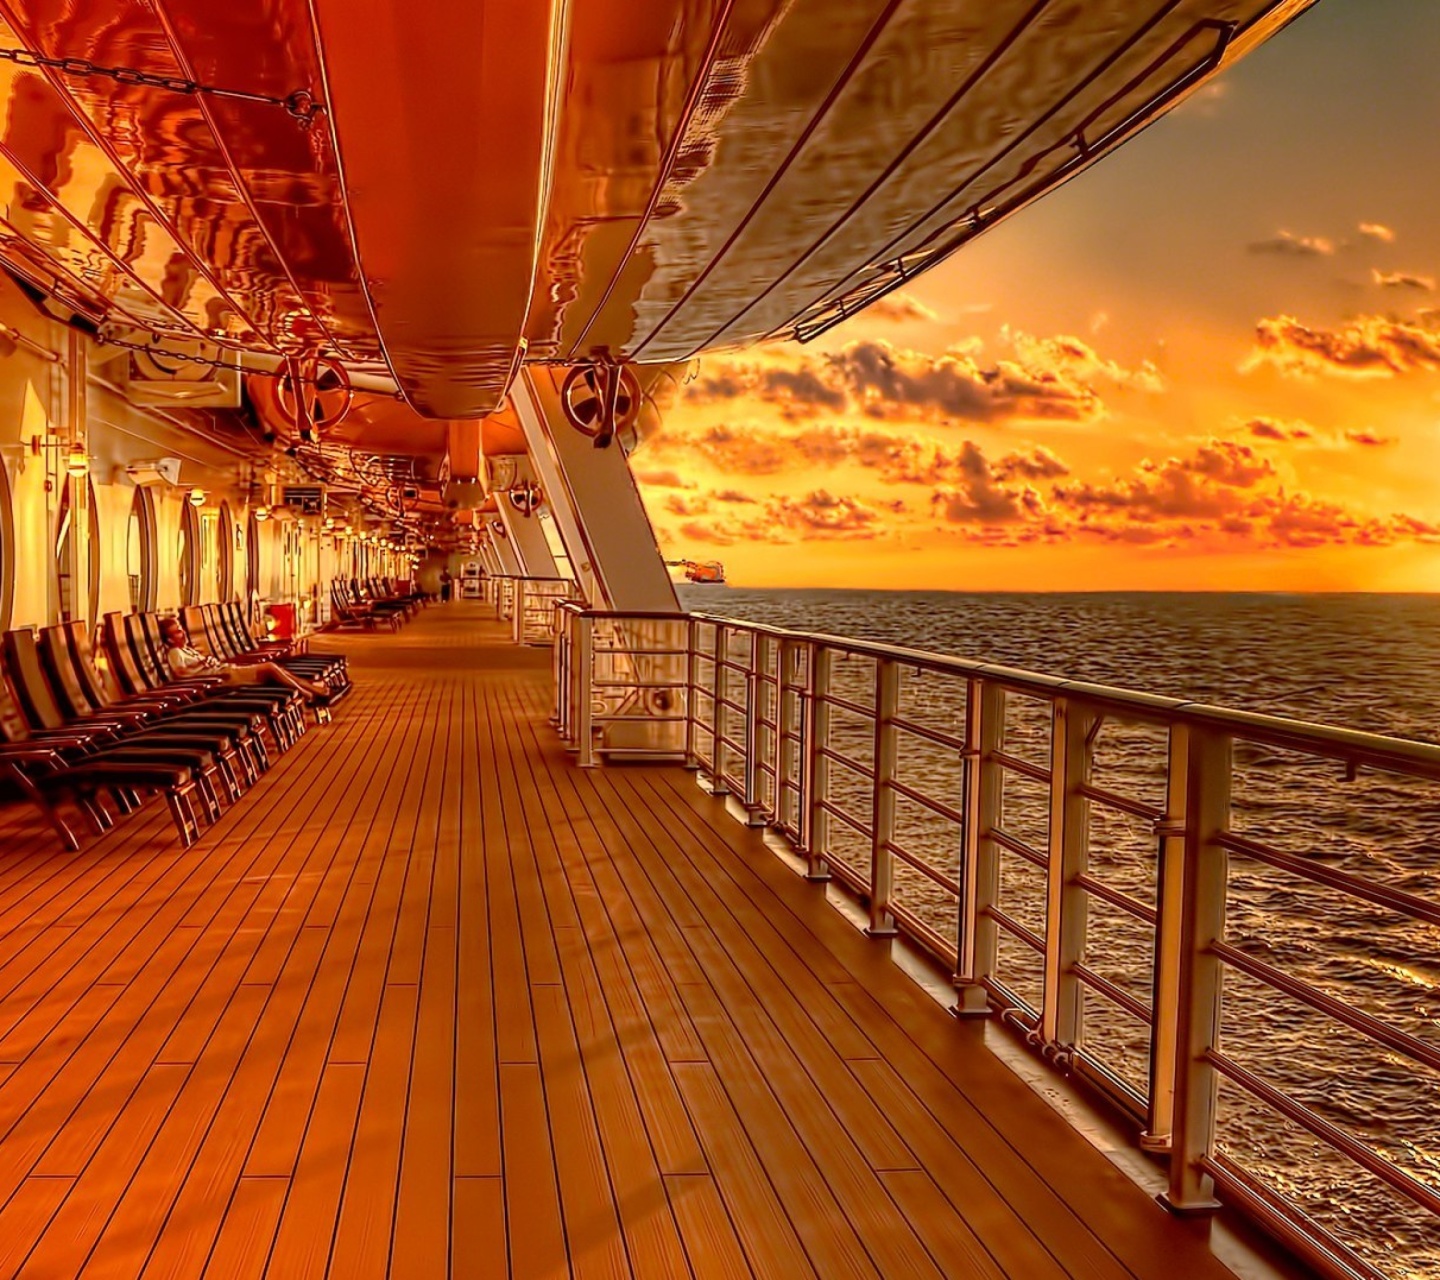 Обои Sunset on posh cruise ship 1440x1280